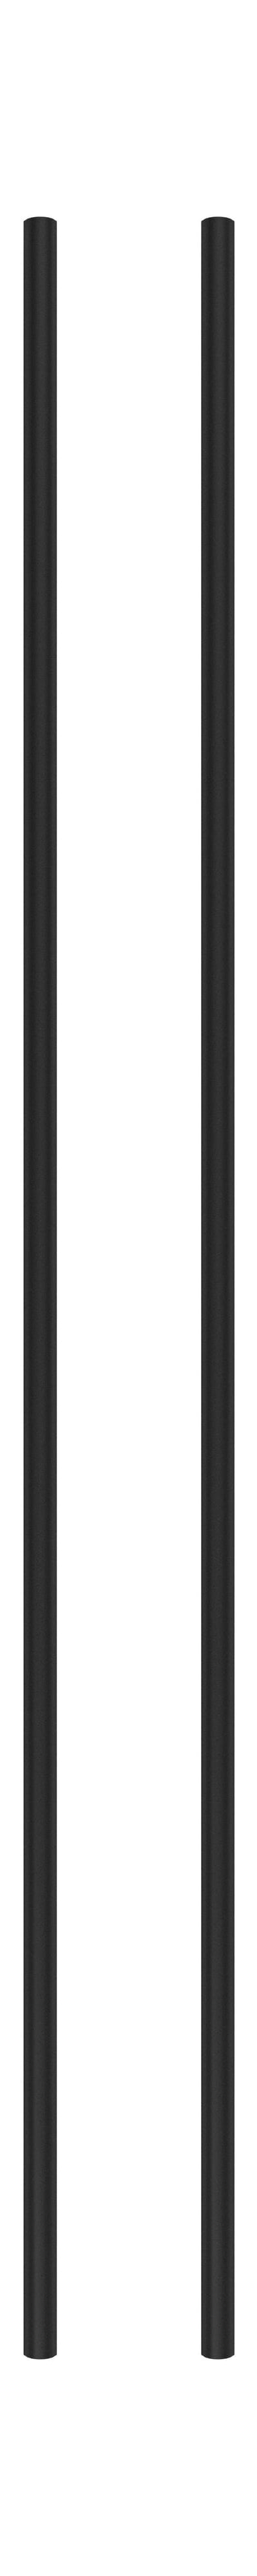 Moebe Regalsystem/Wandregalbein 115 cm Schwarz, 2 Set von 2